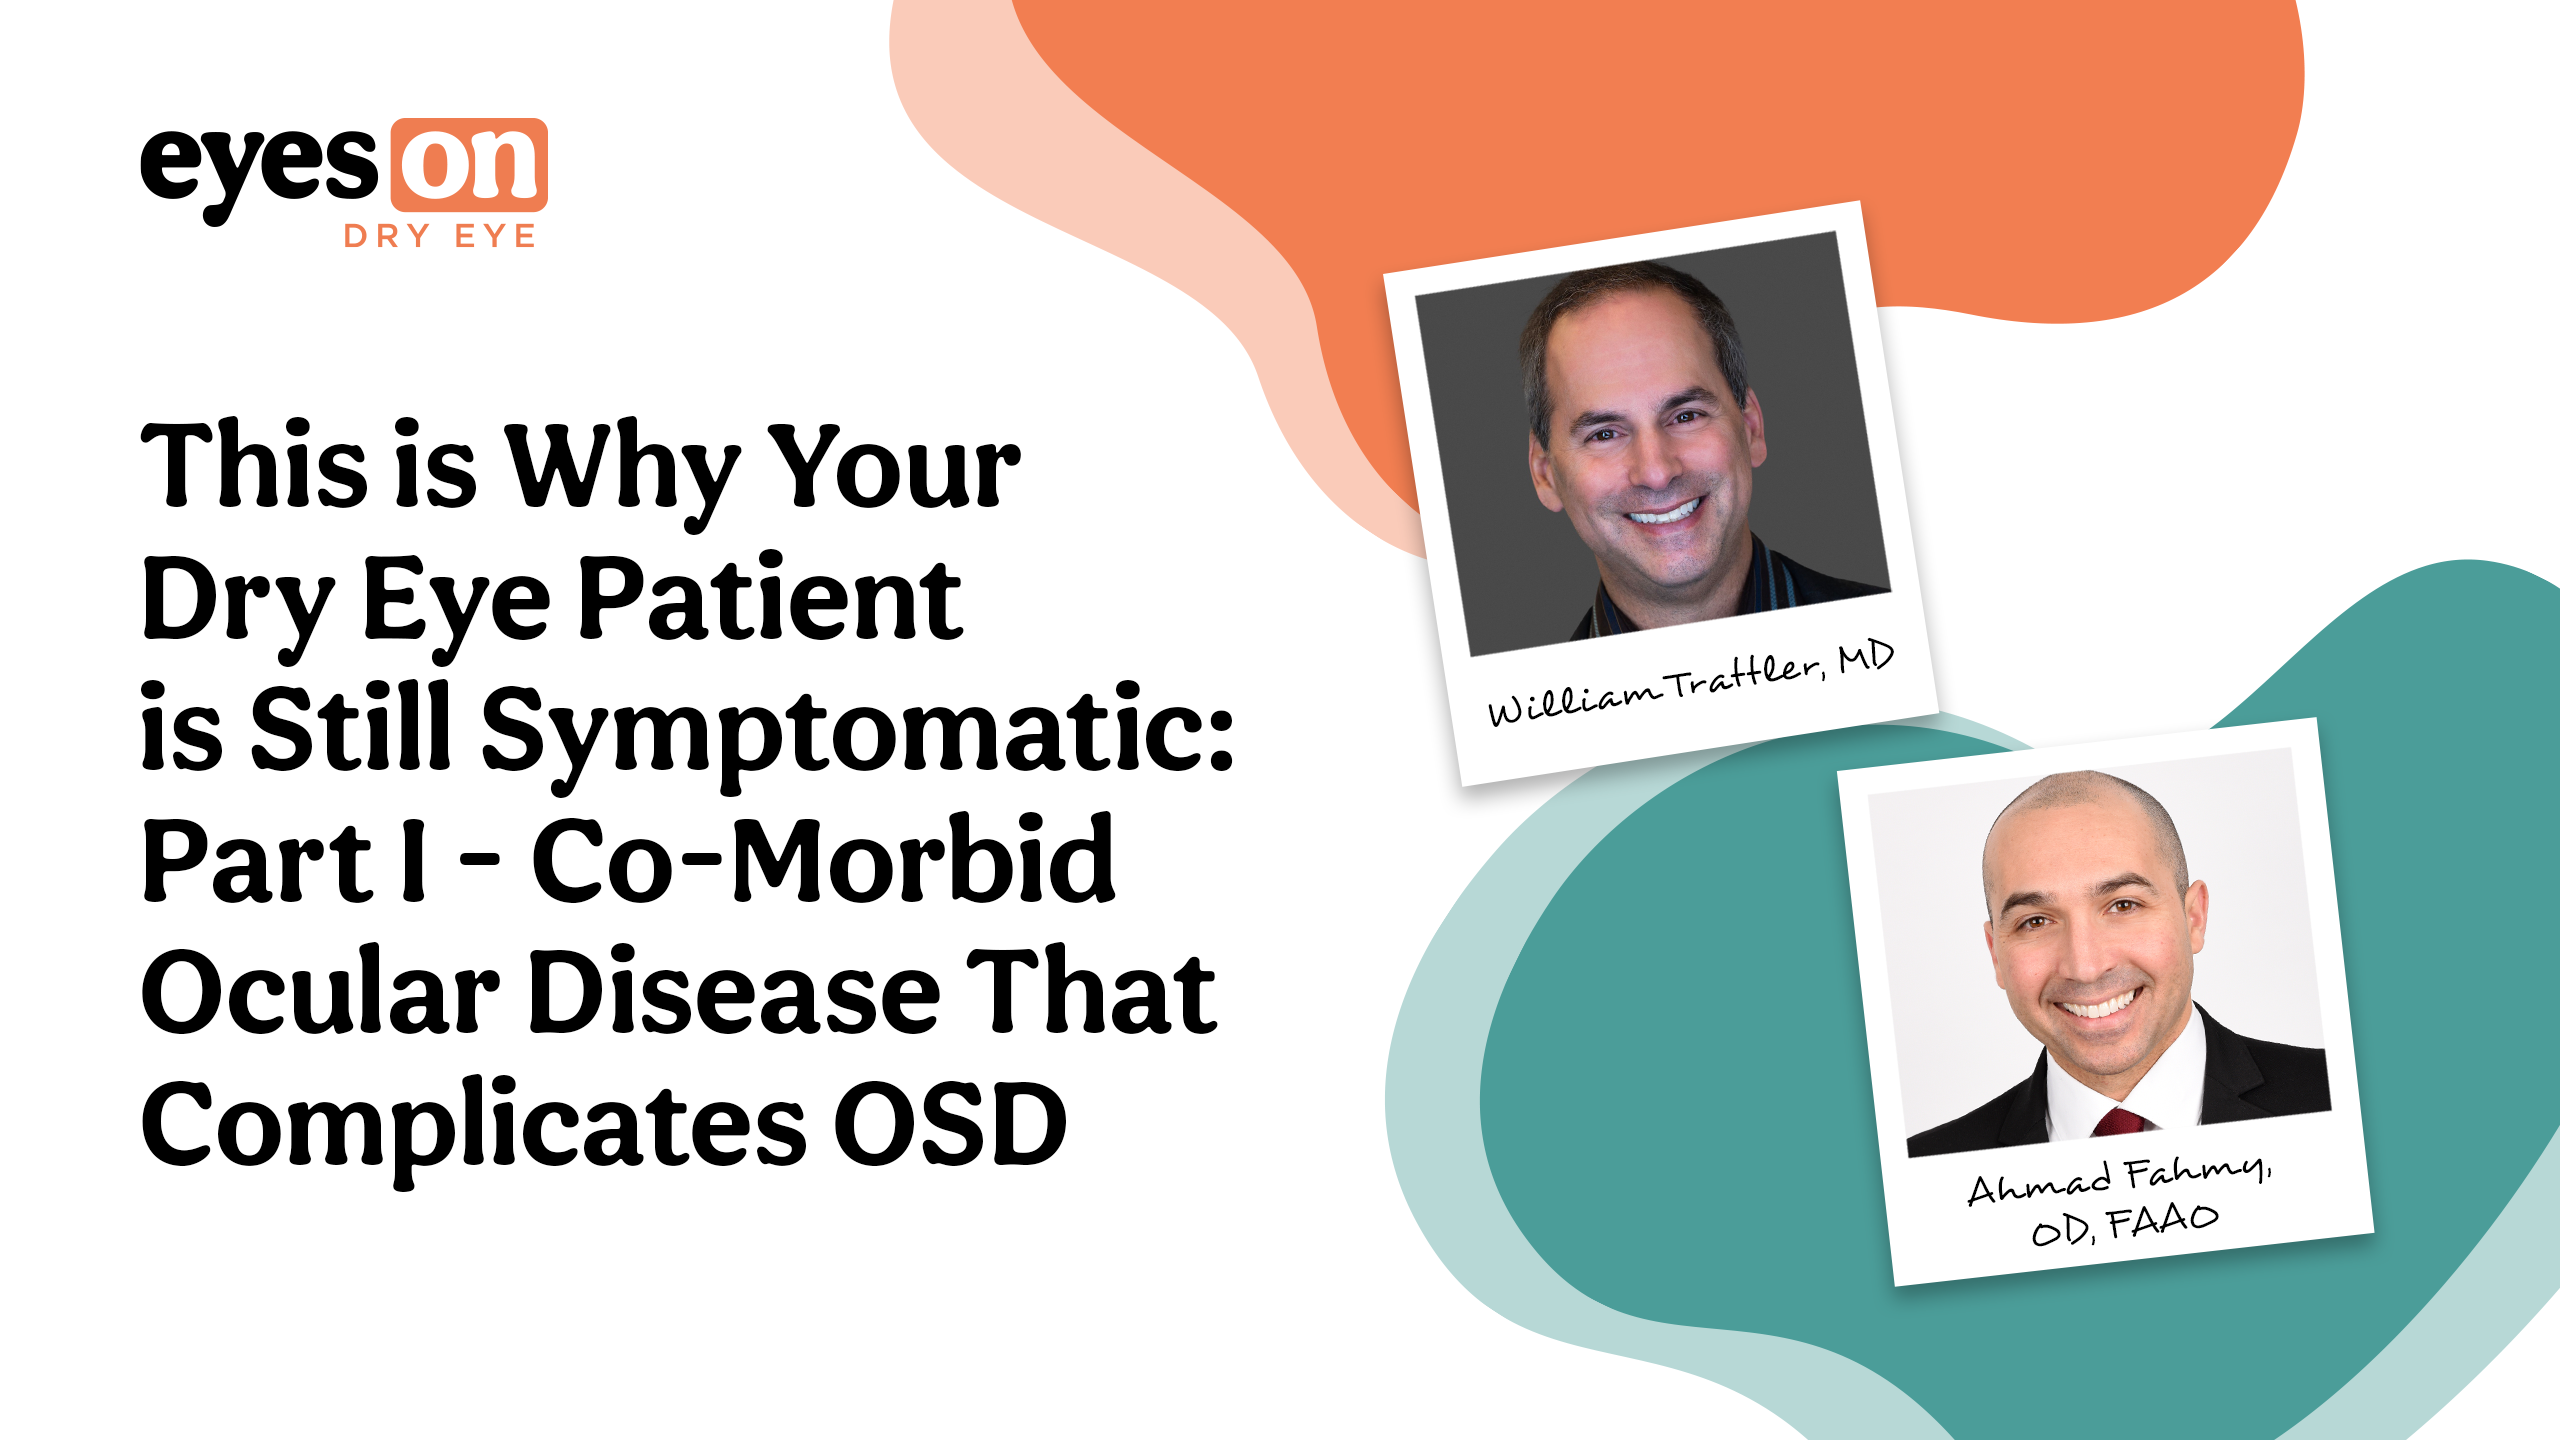 Co-morbid Ocular Disease That Complicates OSD